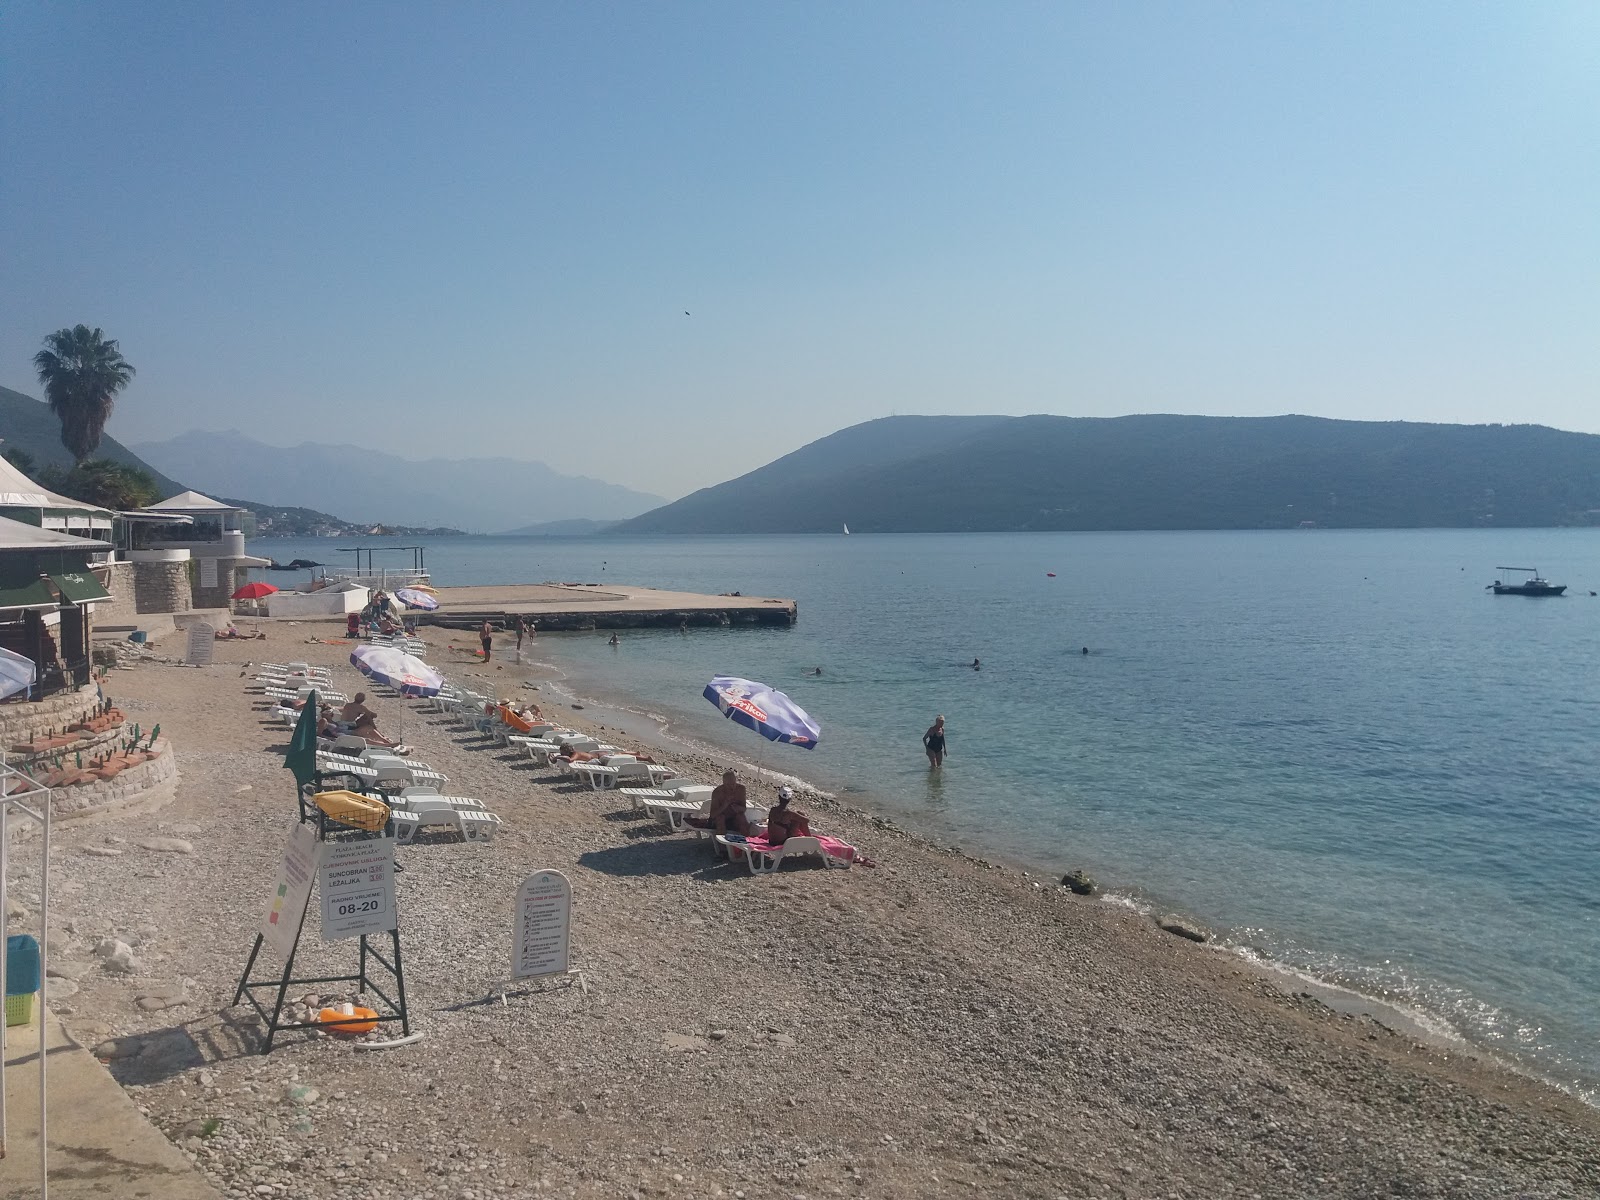 Fotografie cu Corovica plazha zonă de stațiune de pe plajă